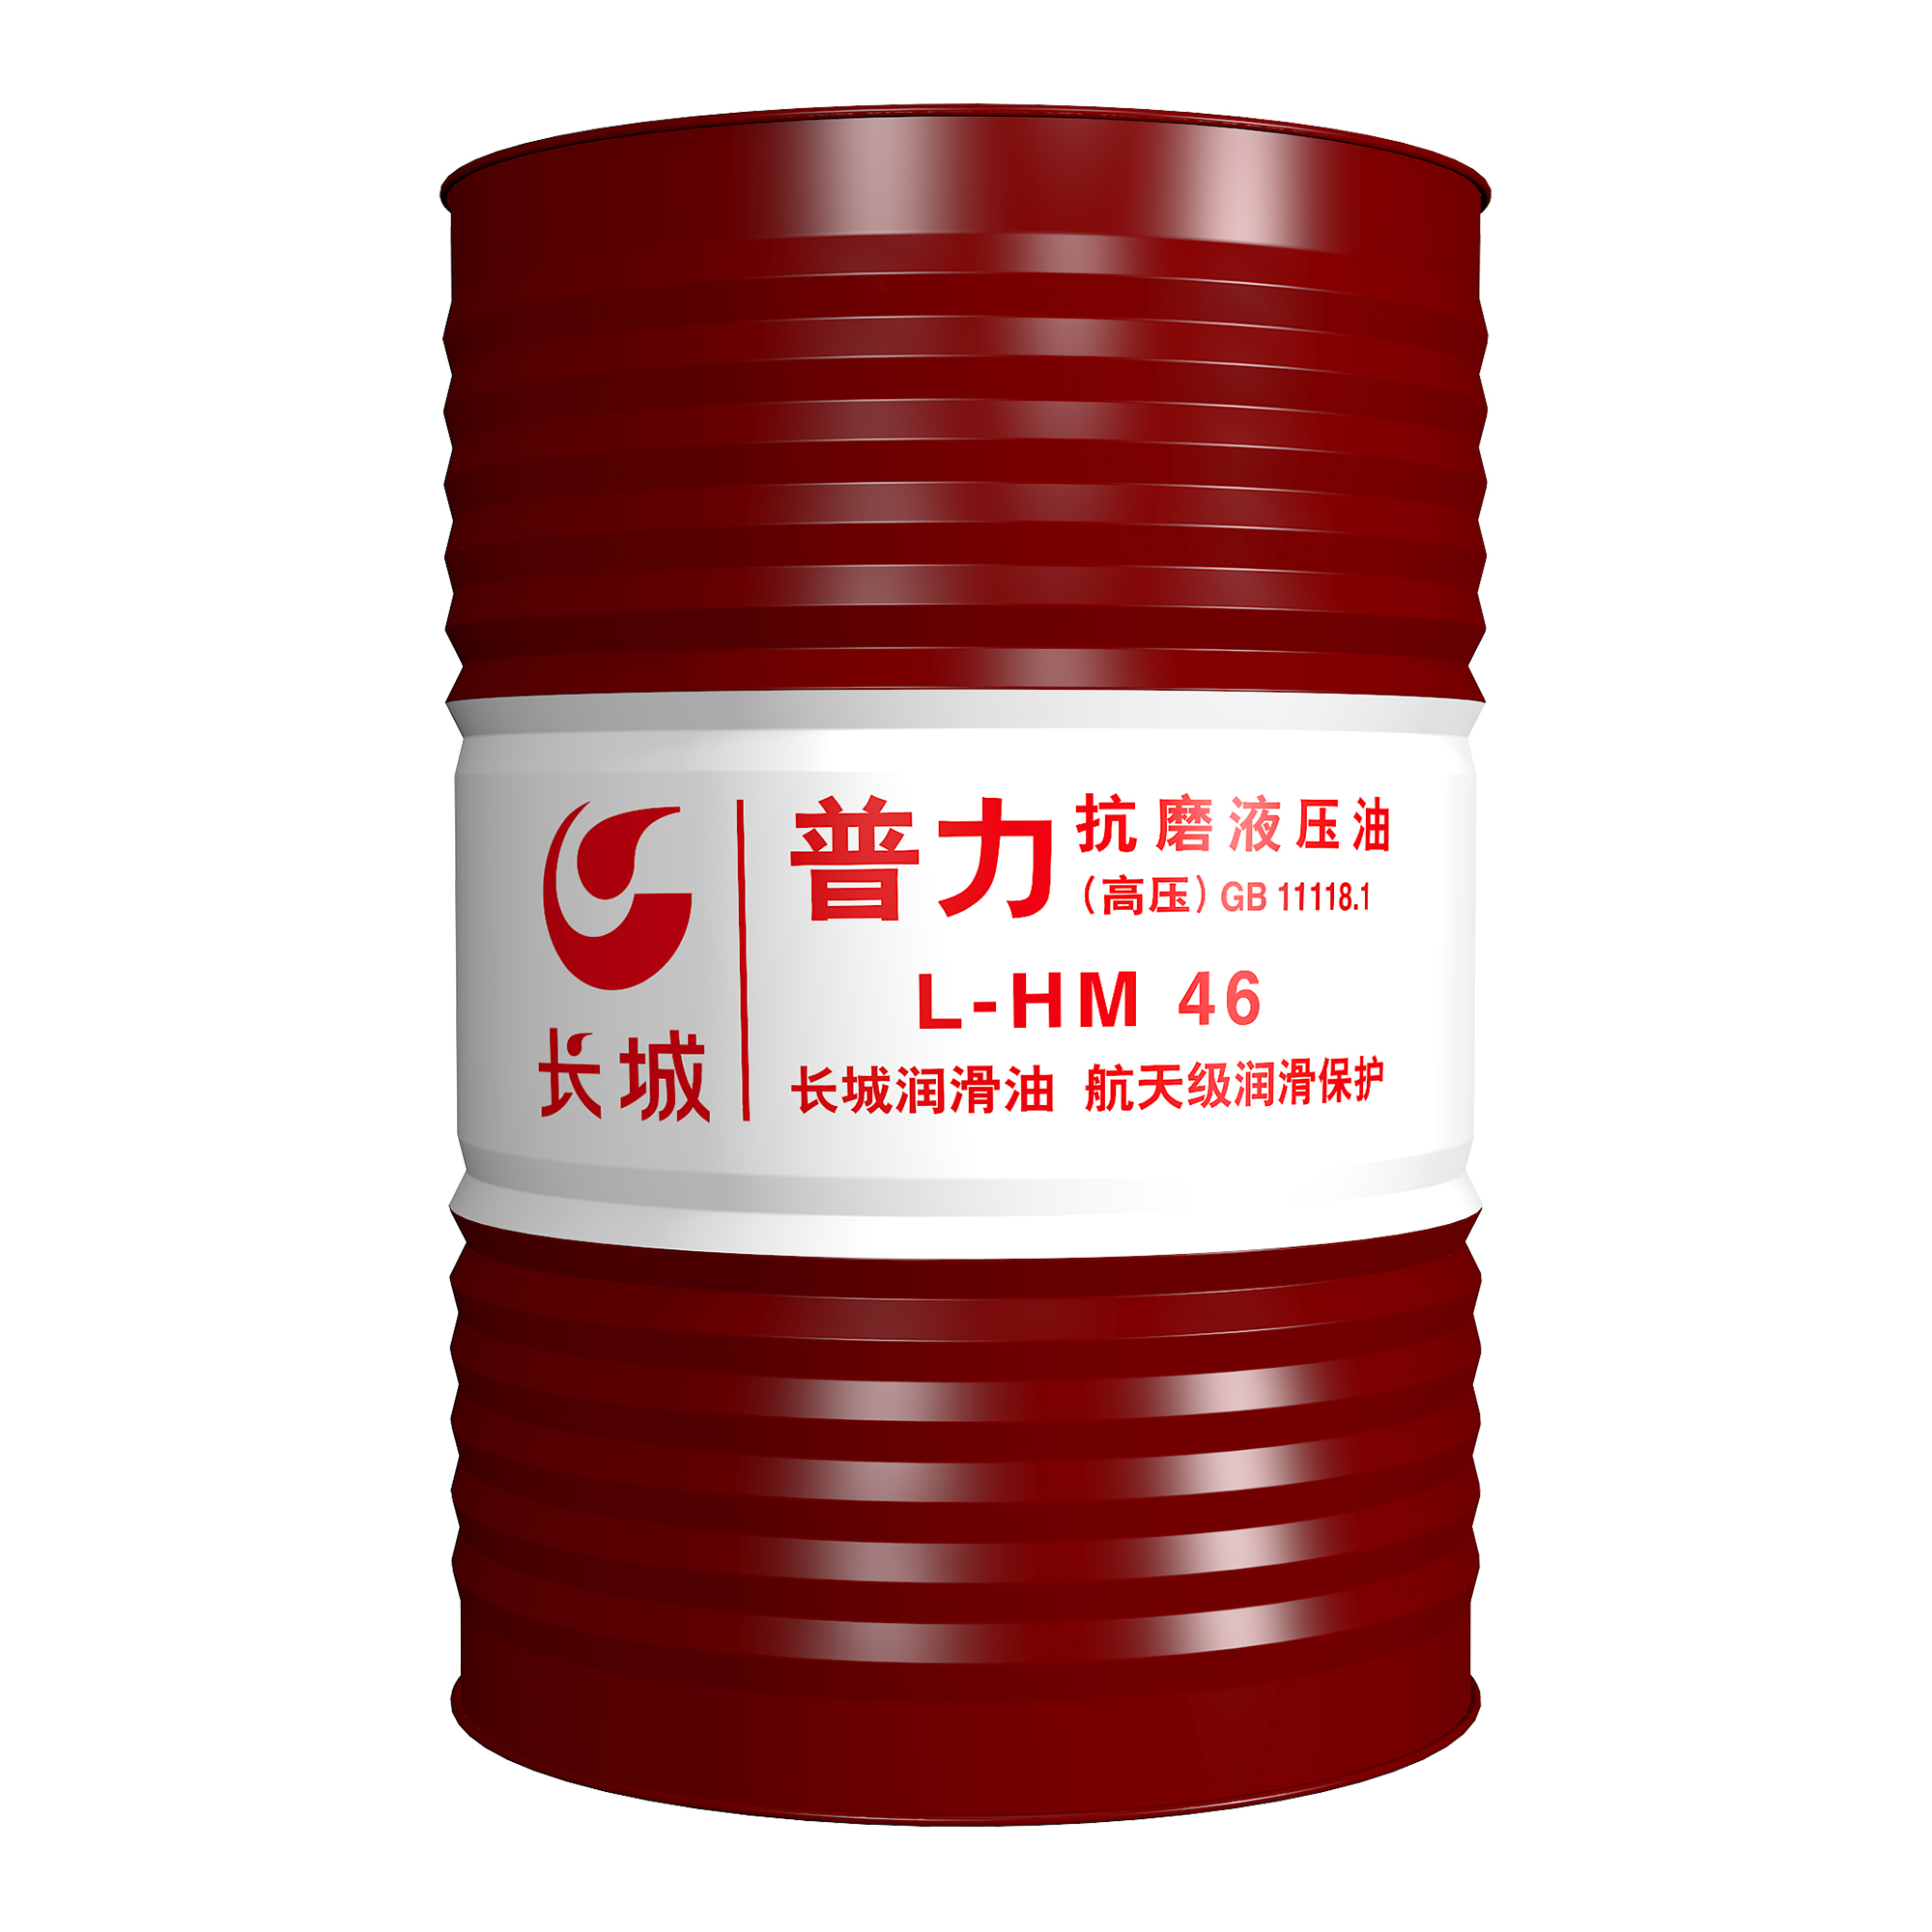 江苏地区 供应长城普力L-HM46液压油 中国石化 荣誉出品